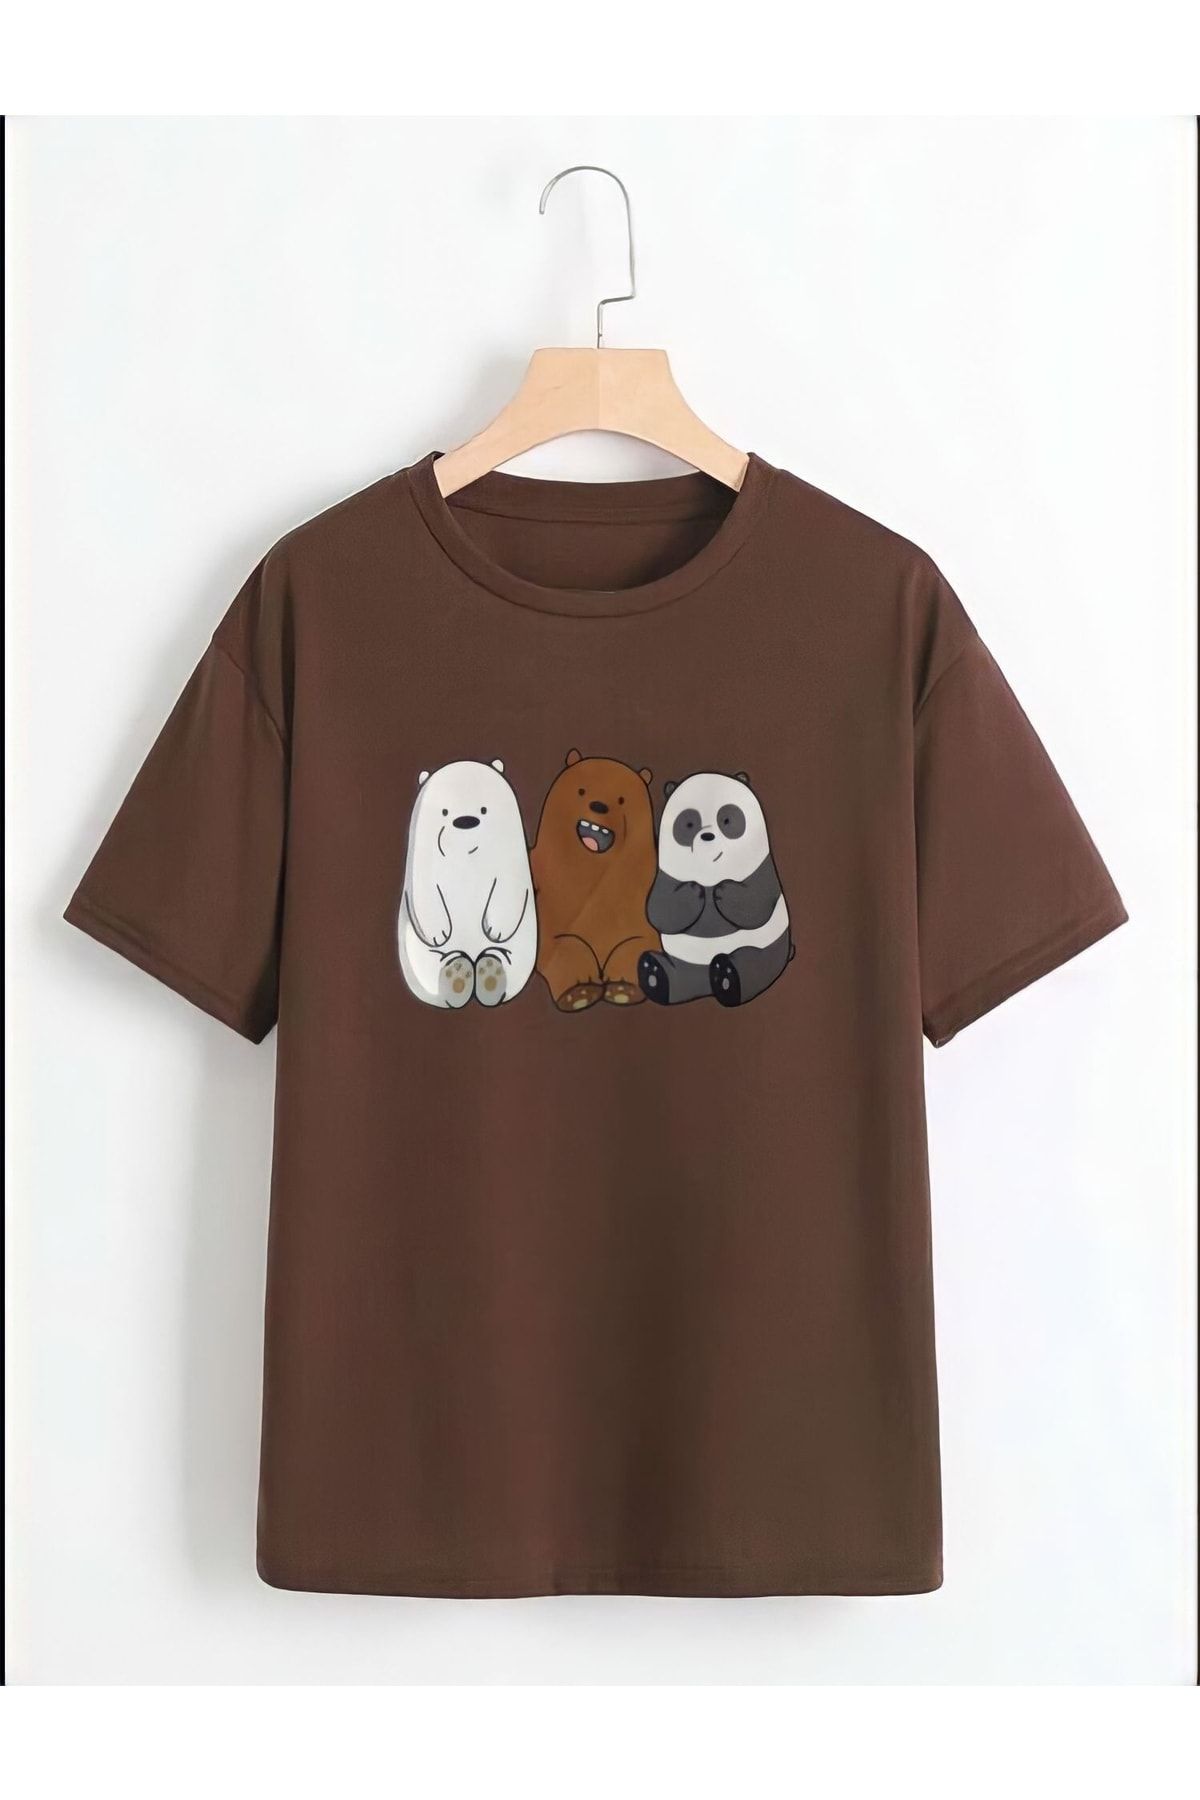 Serays moda Pandalar Baskılı Kız/erkek Çocuk Tişört